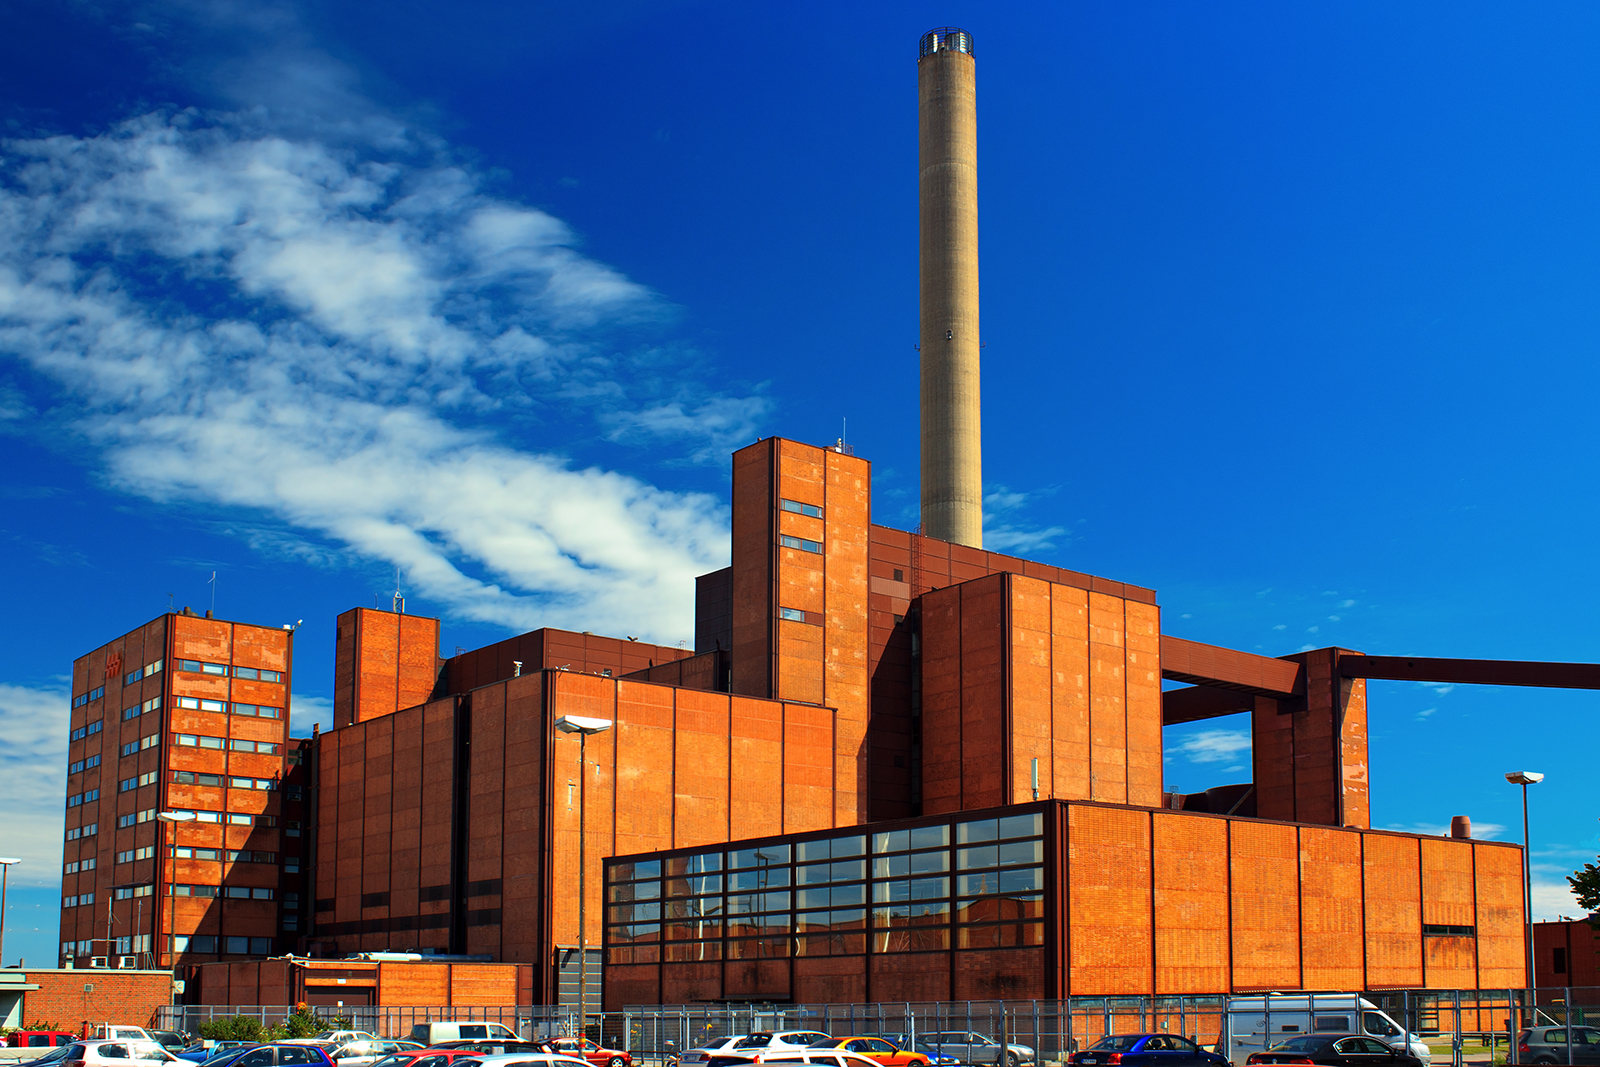 Salmisaaren voimalaitoksessa Helsingissä on lisätty uusiutuvaa energiaa polttamalla puupellettejä kivihiilen joukossa. Kuva: Shutterstock